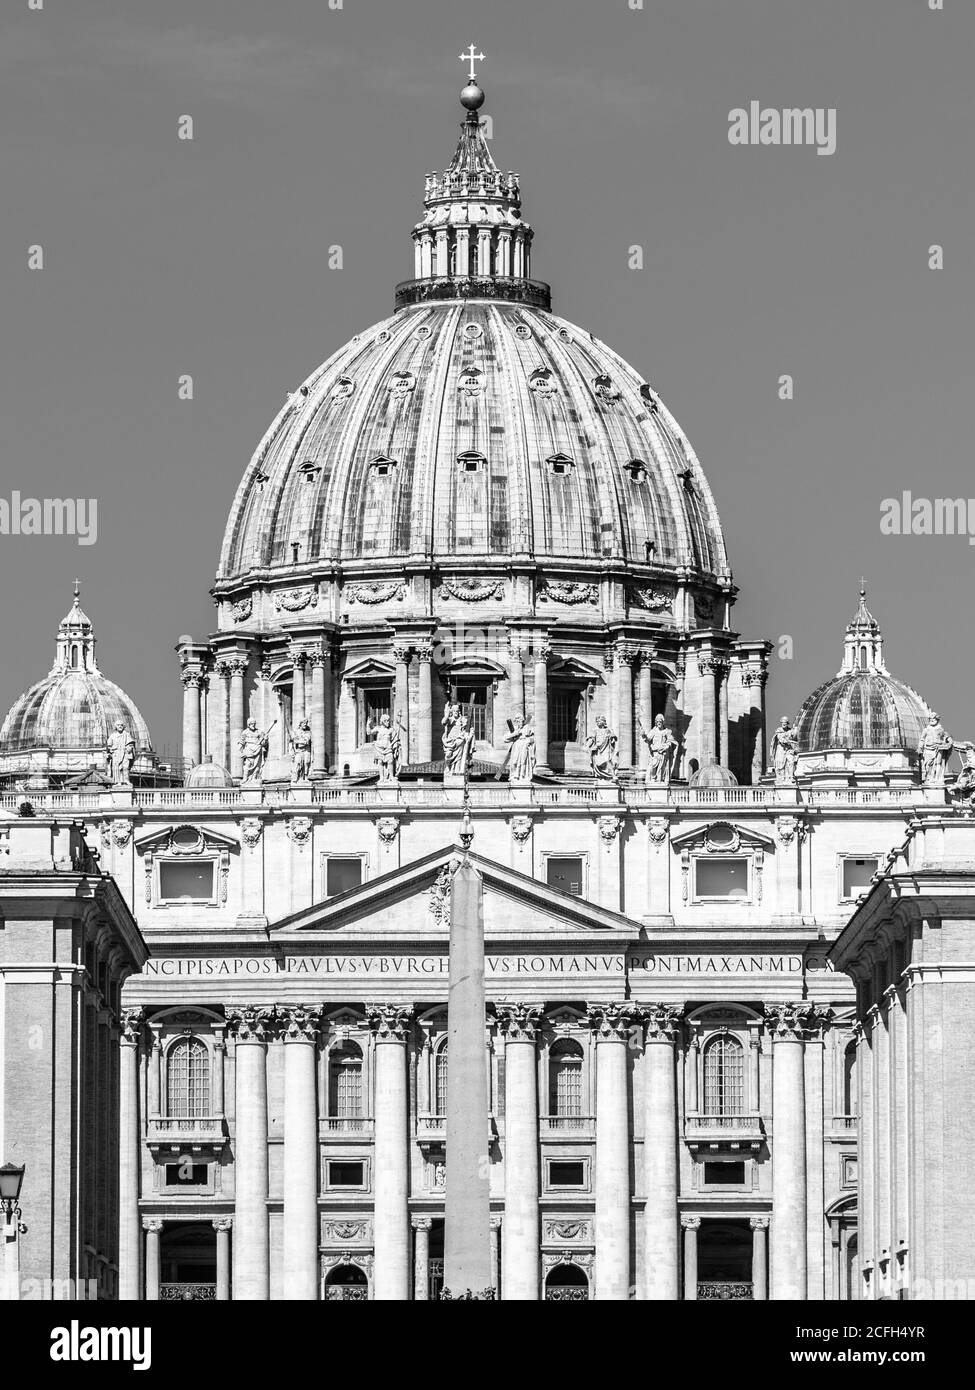 Basilique papale de Saint-Pierre au Vatican. Vue avant détaillée du dôme. Image en noir et blanc. Banque D'Images